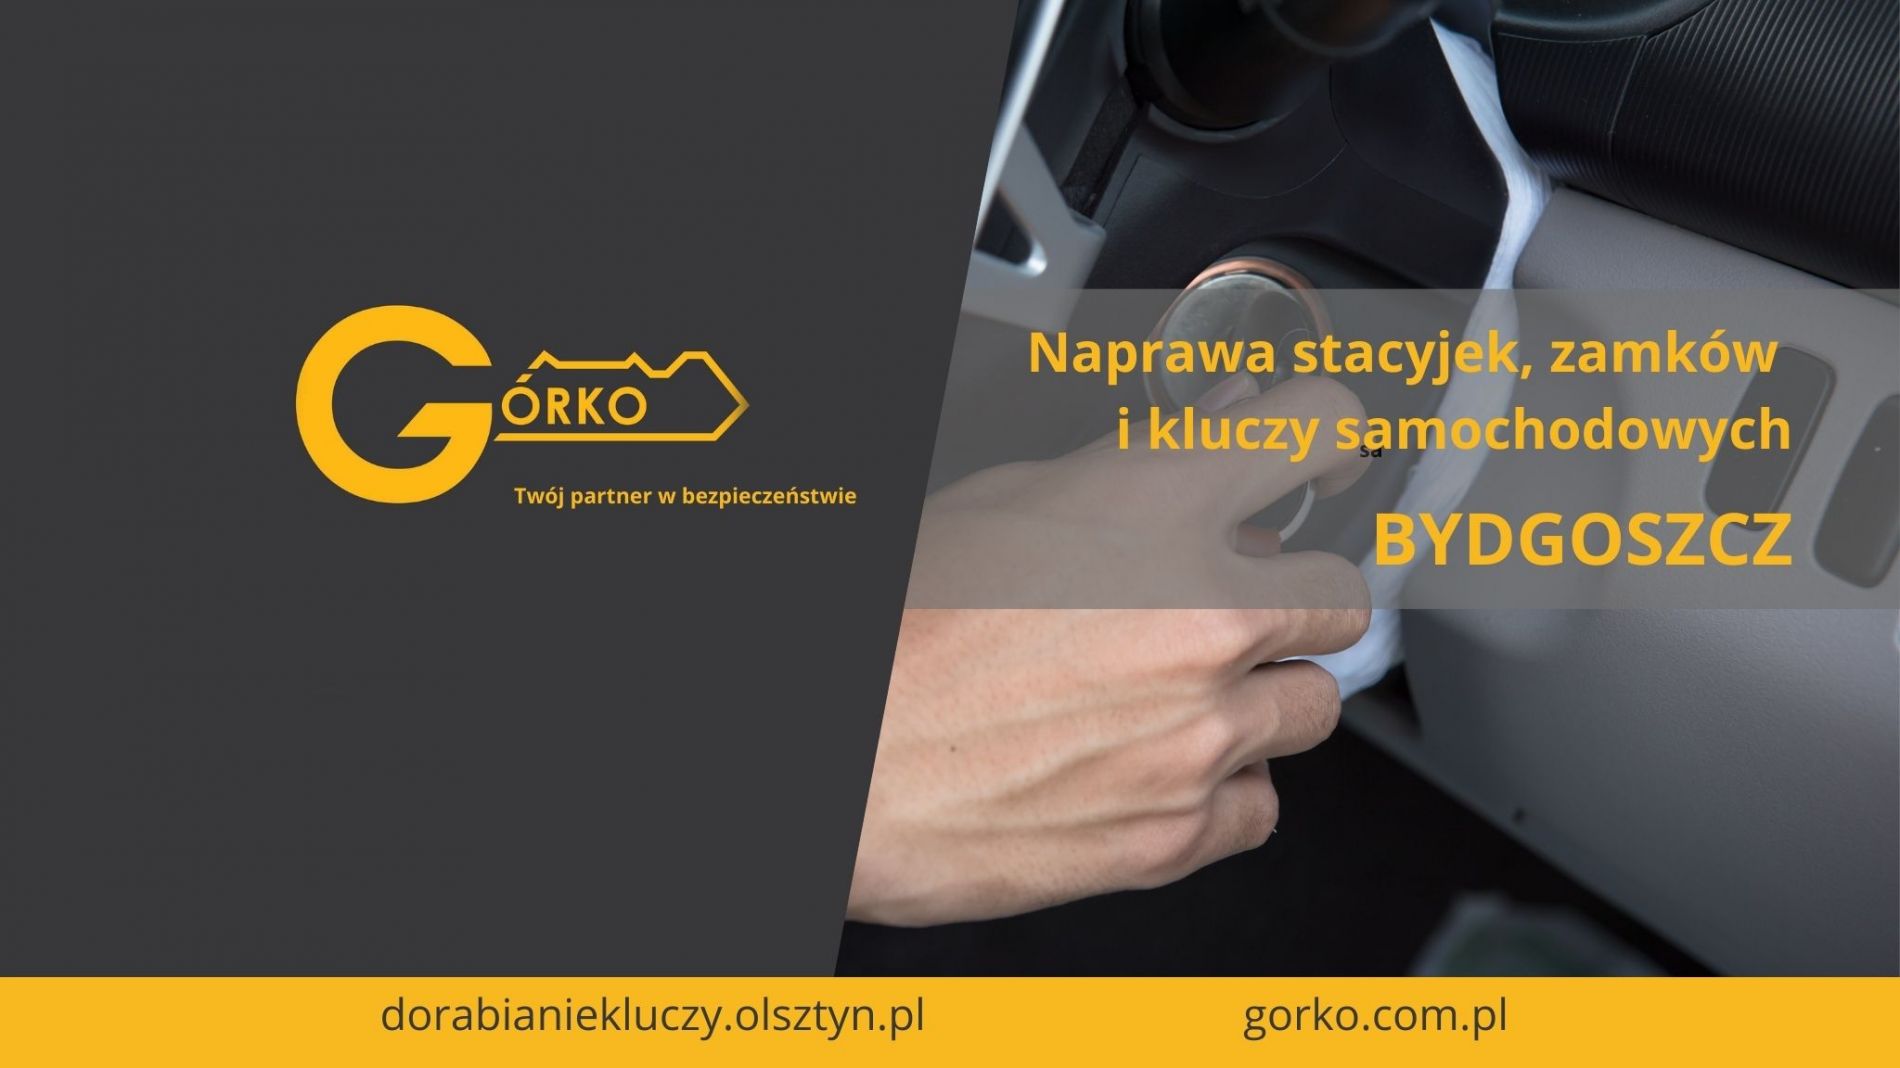 Naprawa stacyjek, zamków i kluczy samochodowych – Bydgoszcz (Usługa zdalna)